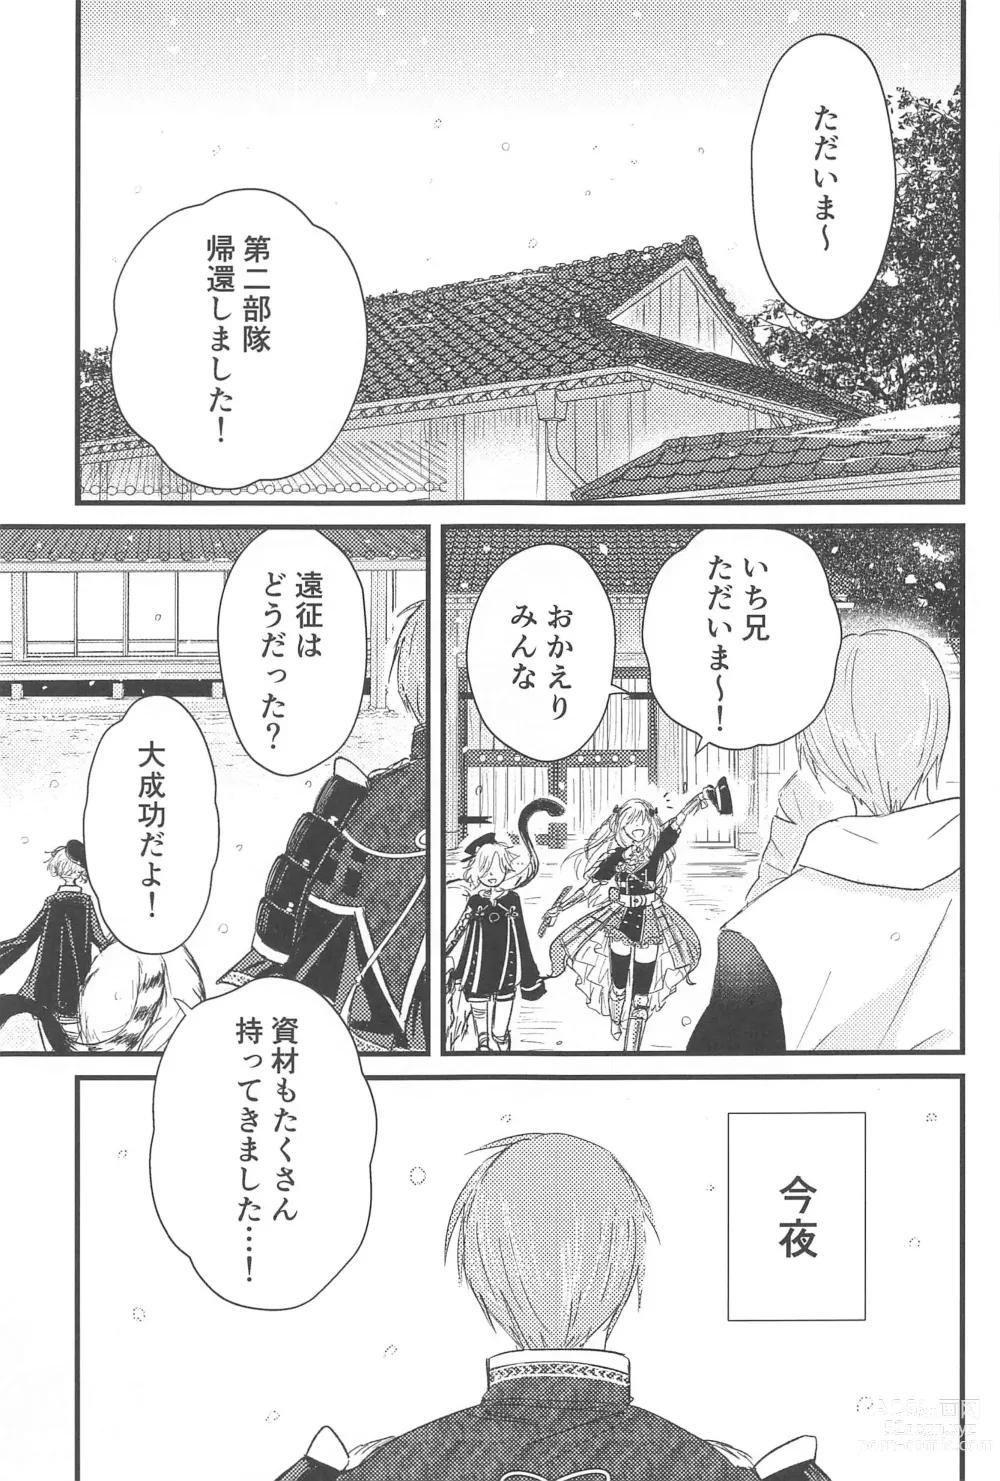 Page 2 of doujinshi Hatsuyo ni Tsugu